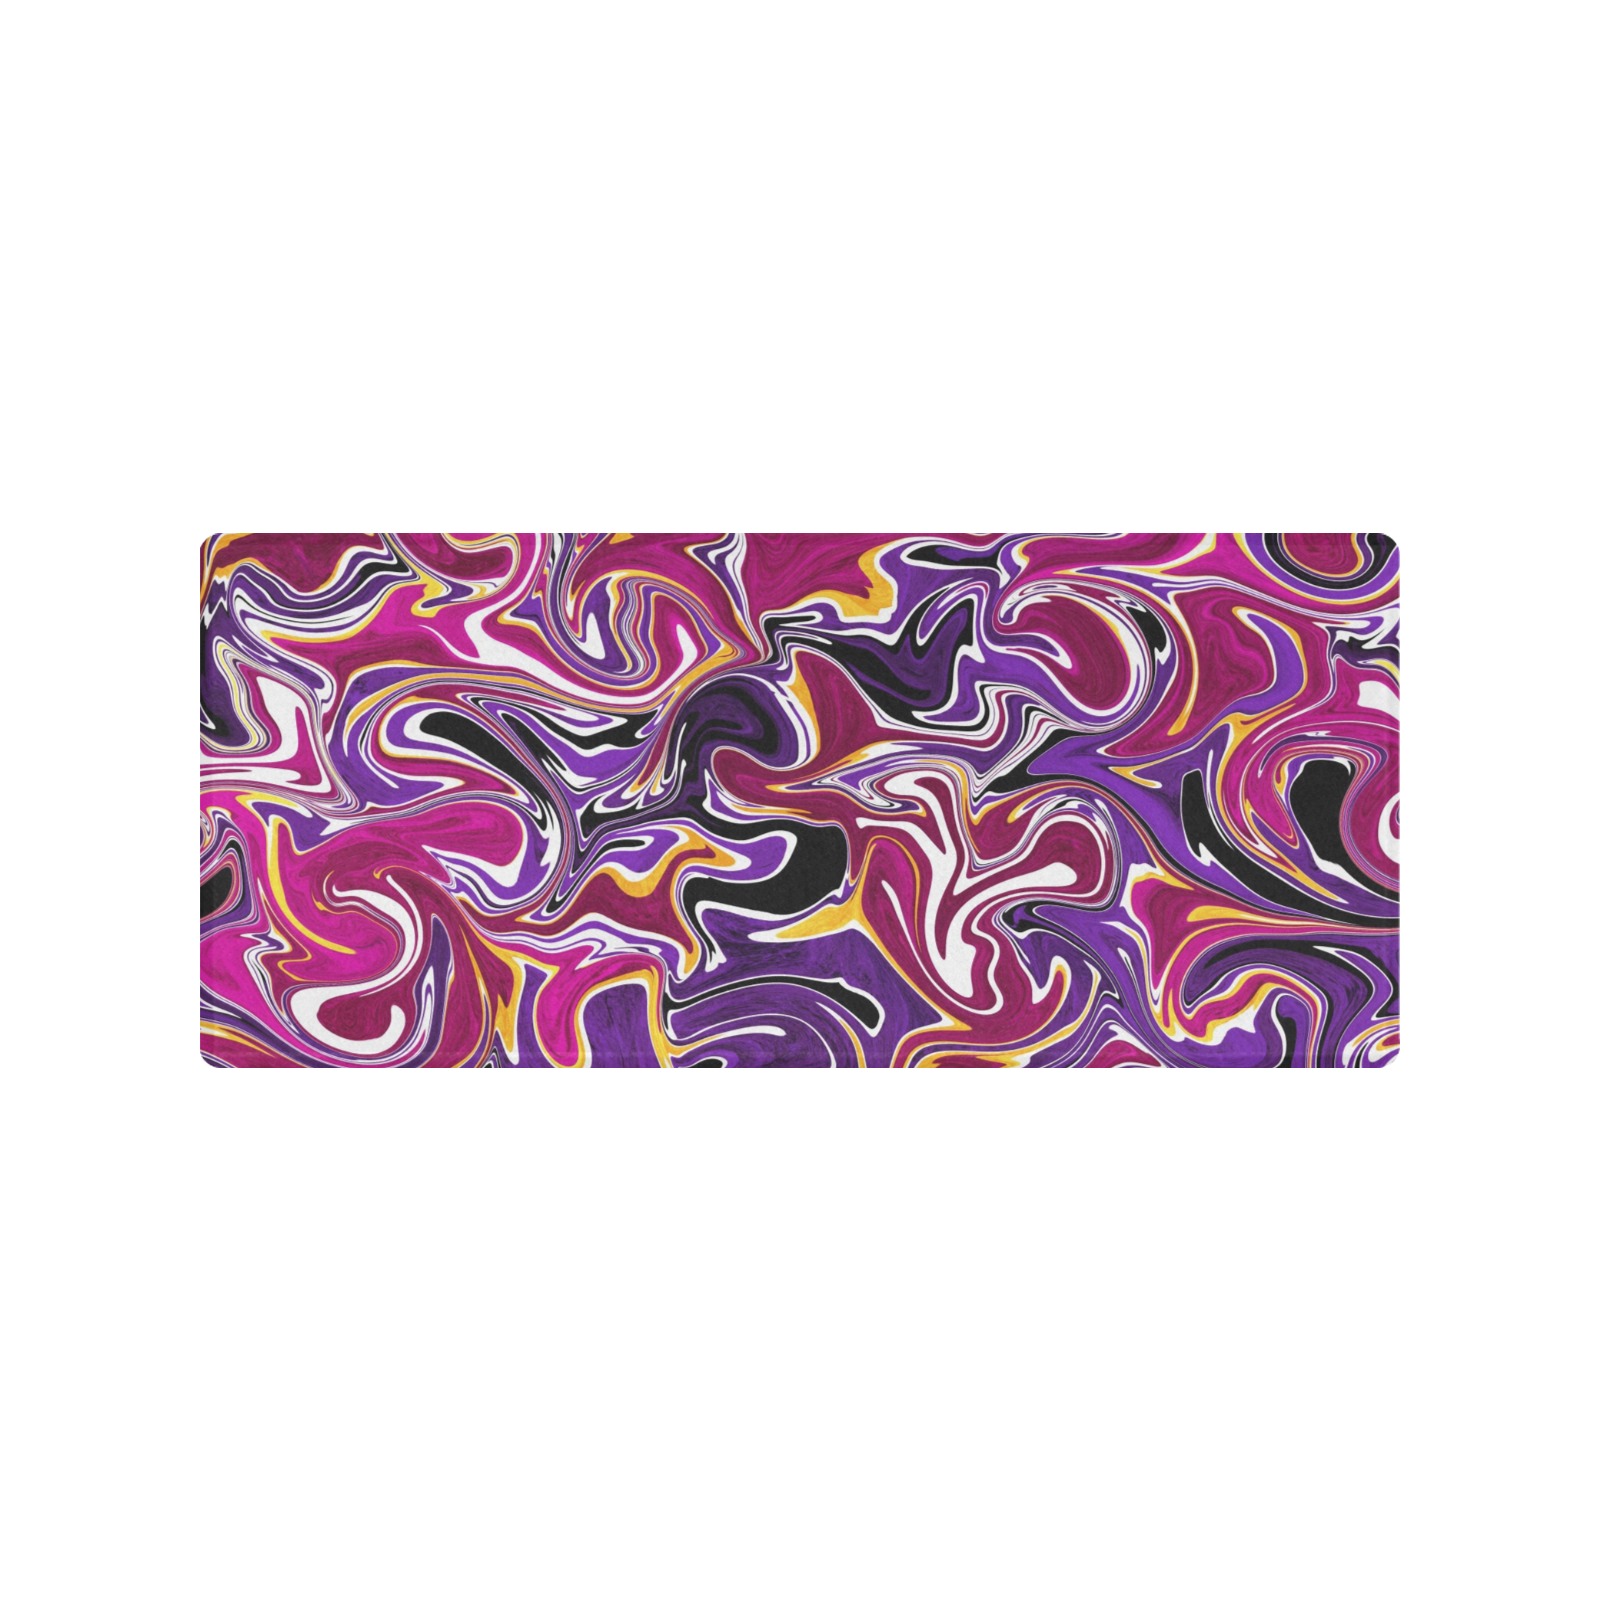 Purple swirl Gaming Mousepad (35"x16")